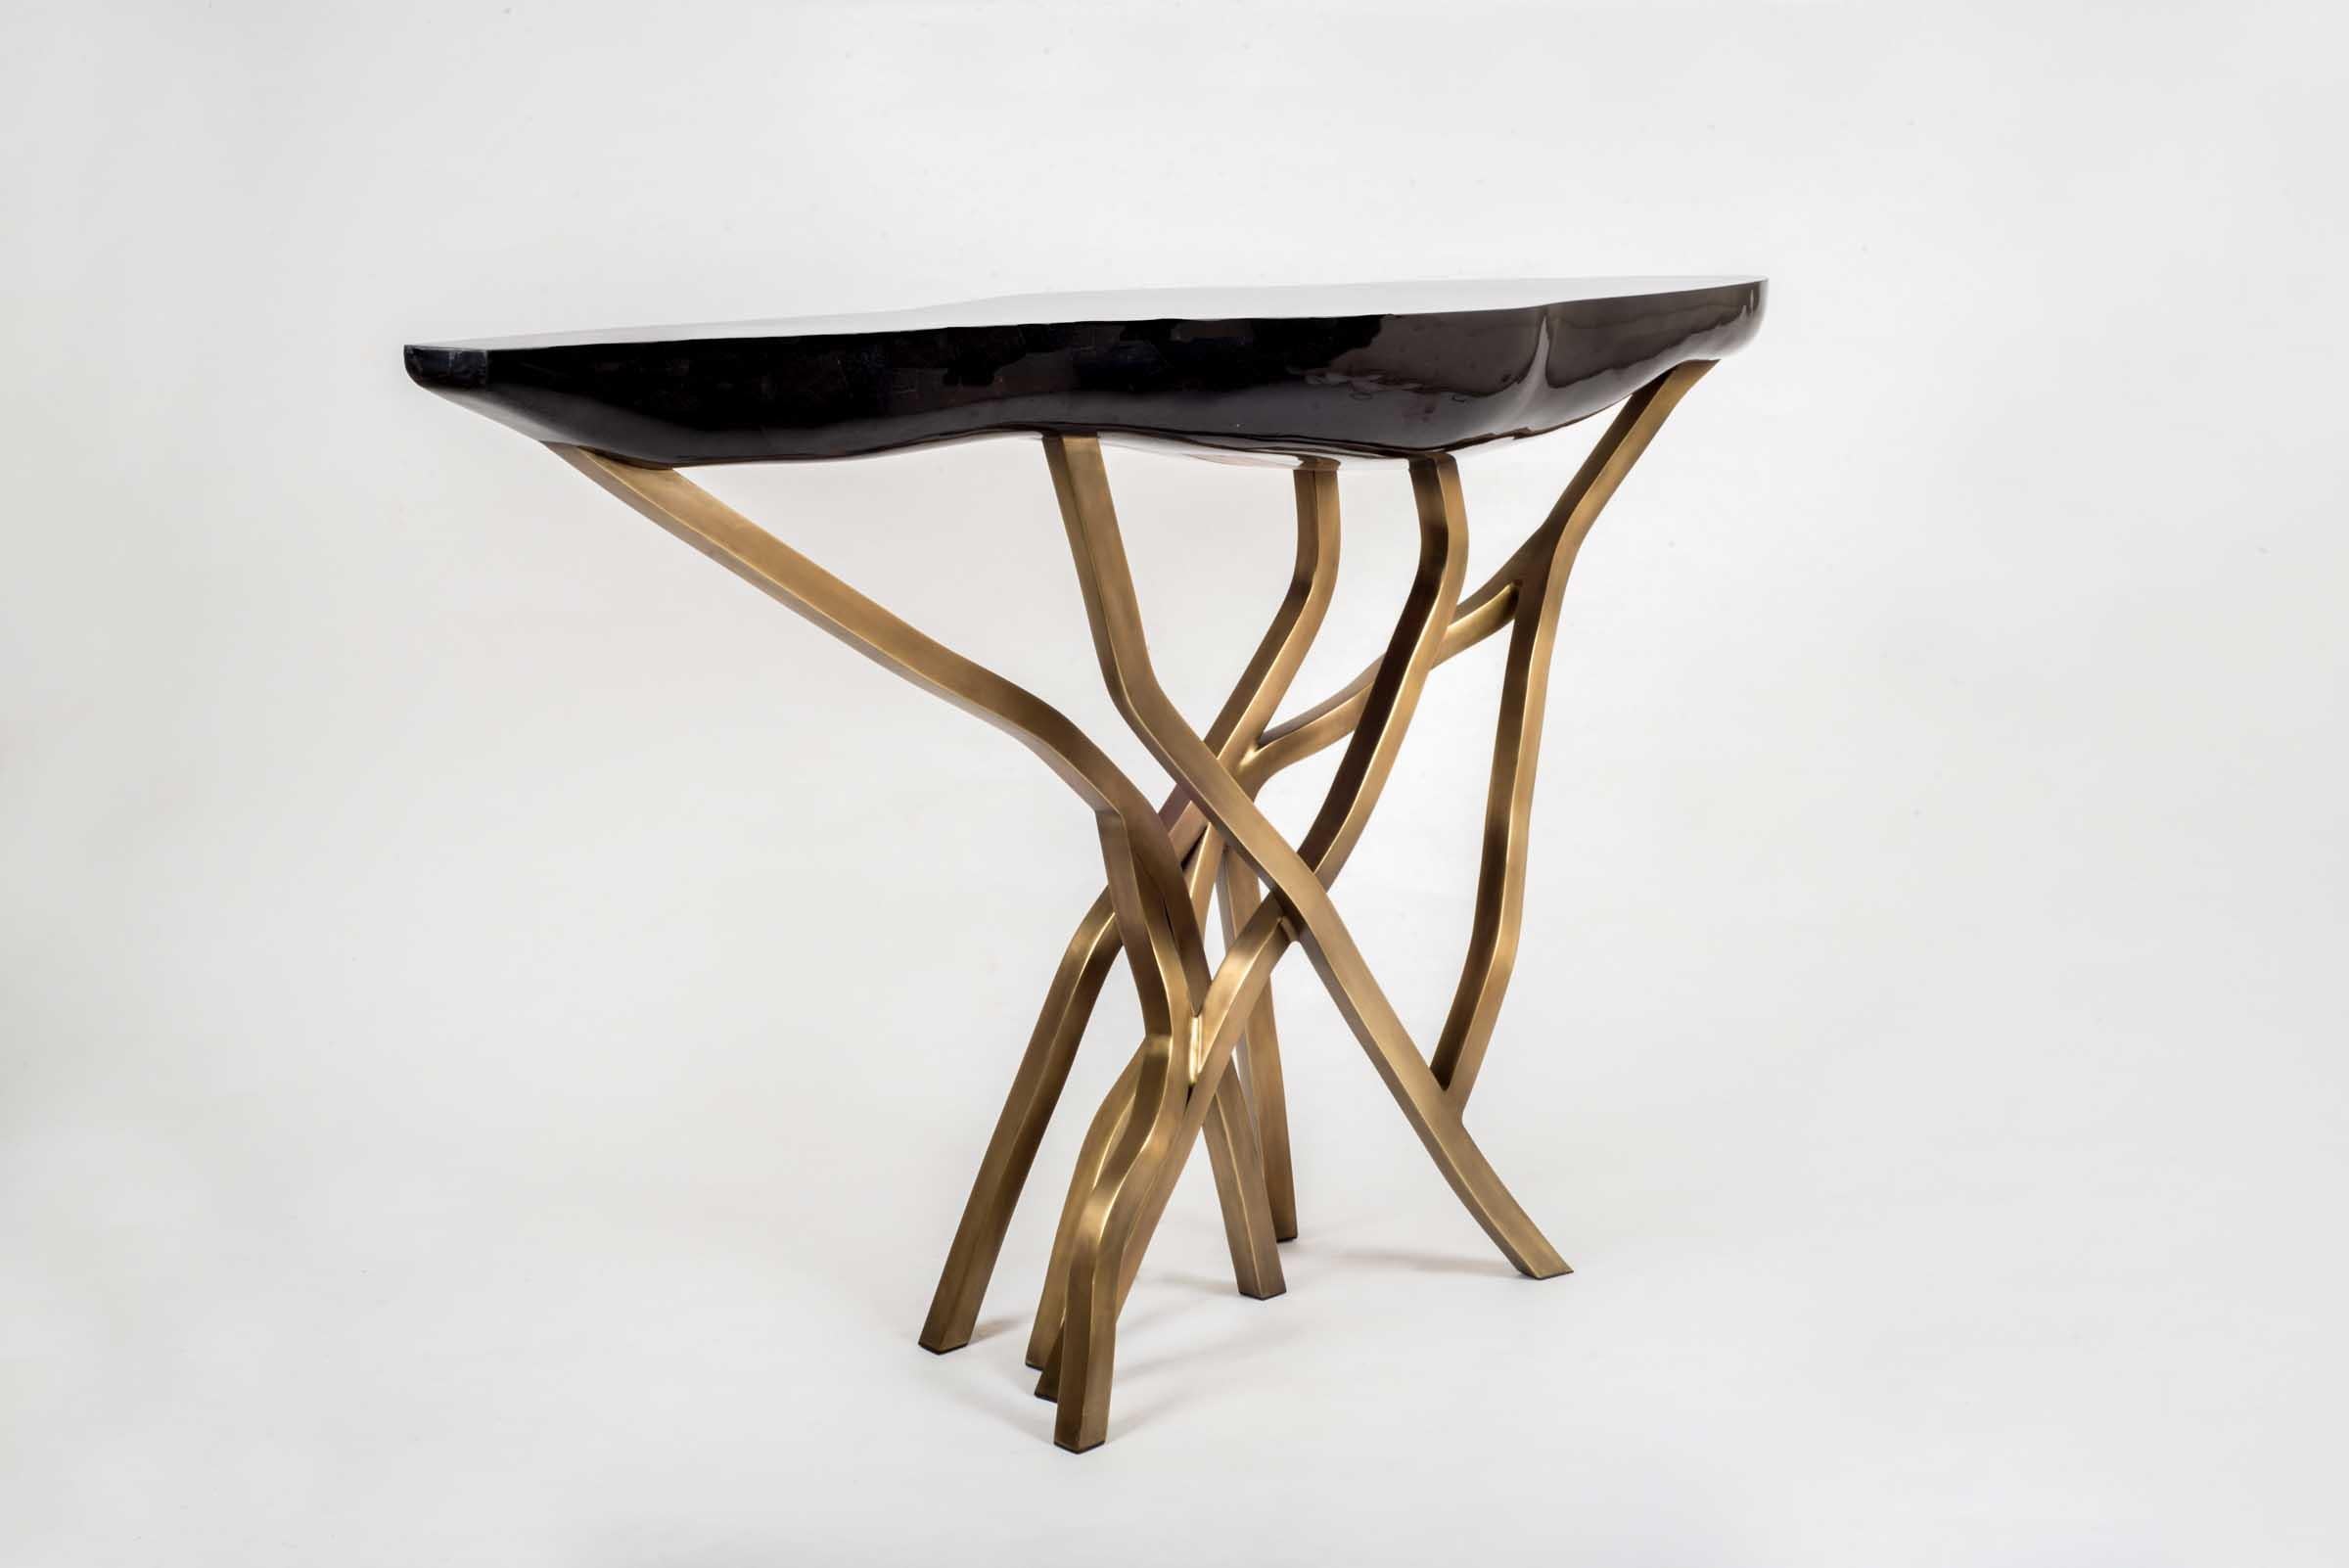 La table console en acacia est un élément spectaculaire dans n'importe quel espace. Le plateau de forme amorphe est en coquille de stylo noir et les pieds de forme organique sont en laiton bronze-patina. Les parties du coquillage sont sélectionnées